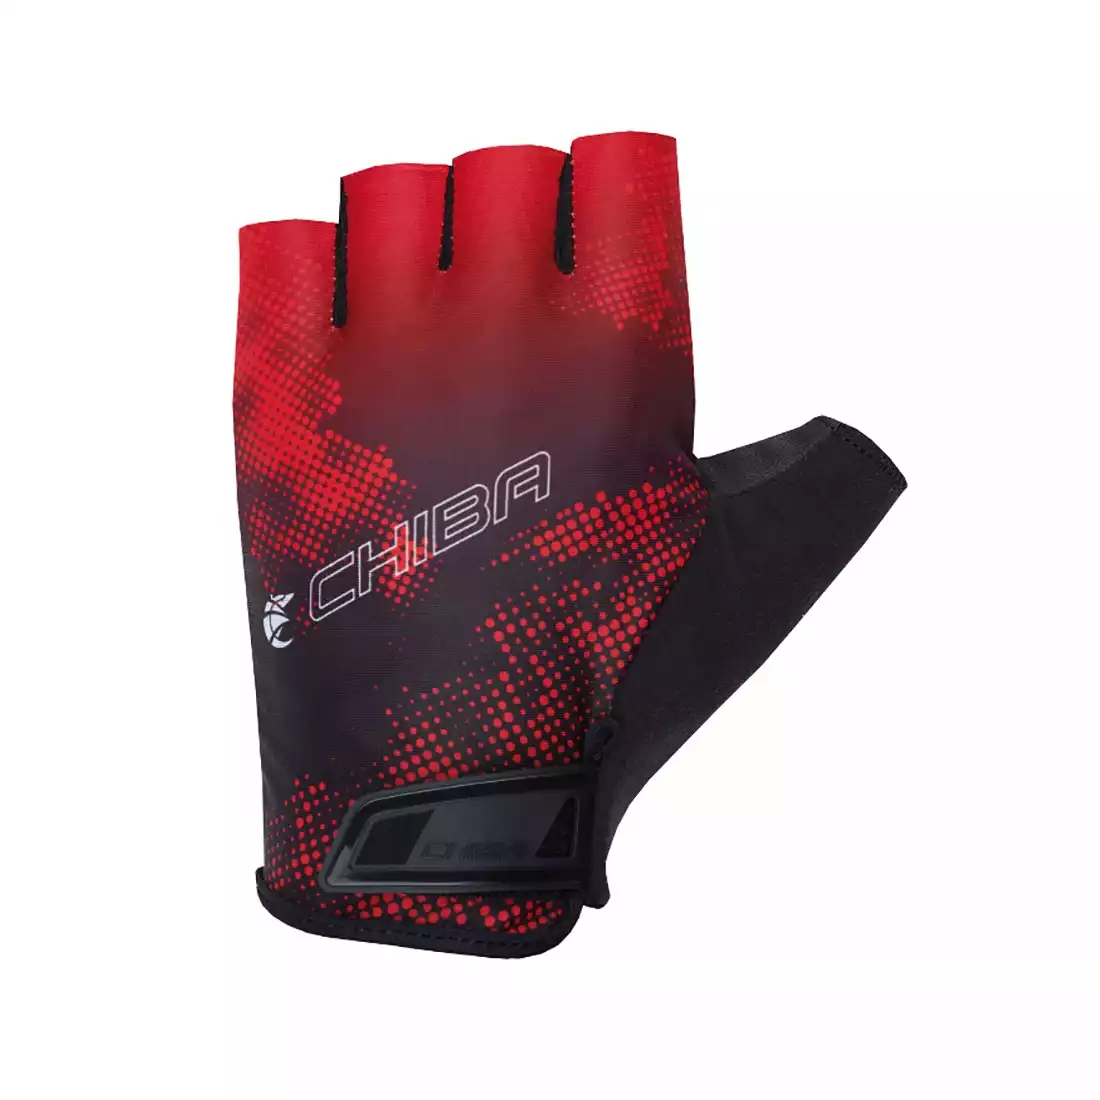 CHIBA SS21 rękawiczki RIDE II XS czerwone 3040618R-1